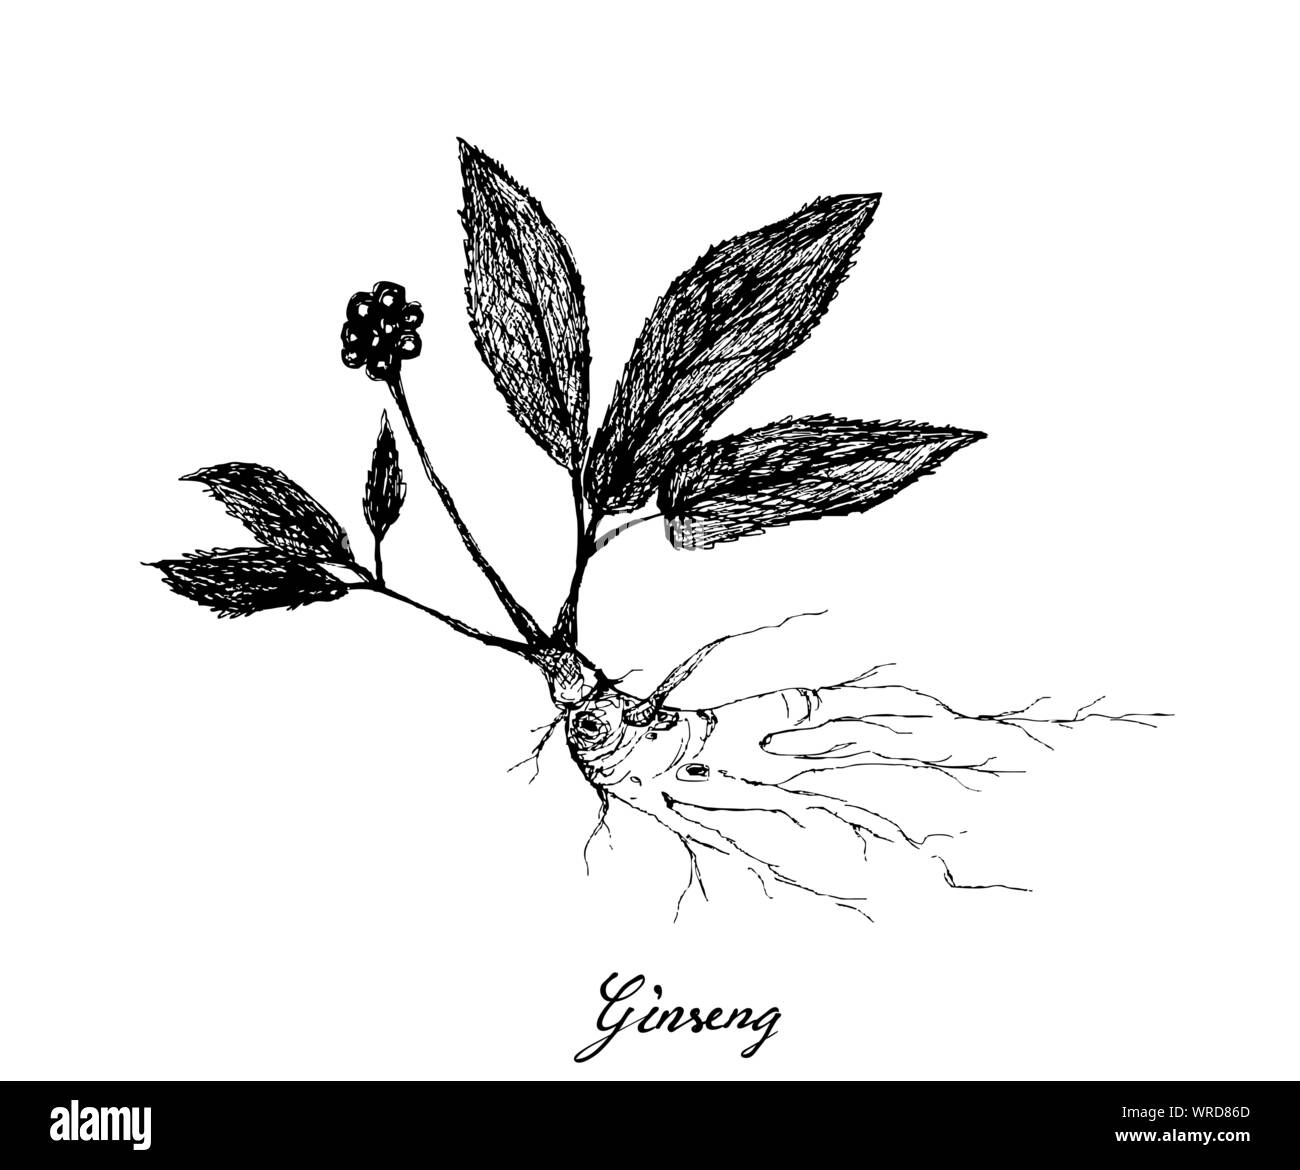 Pflanzliche Blumen und Pflanzen, Handgezeichnete Abbildung: Ginseng Pflanzen verwendet für traditionelle Medizin, die geglaubt werden, um Energie erhöhen, senken den Blutzuckerspiegel und Chole Stock Vektor